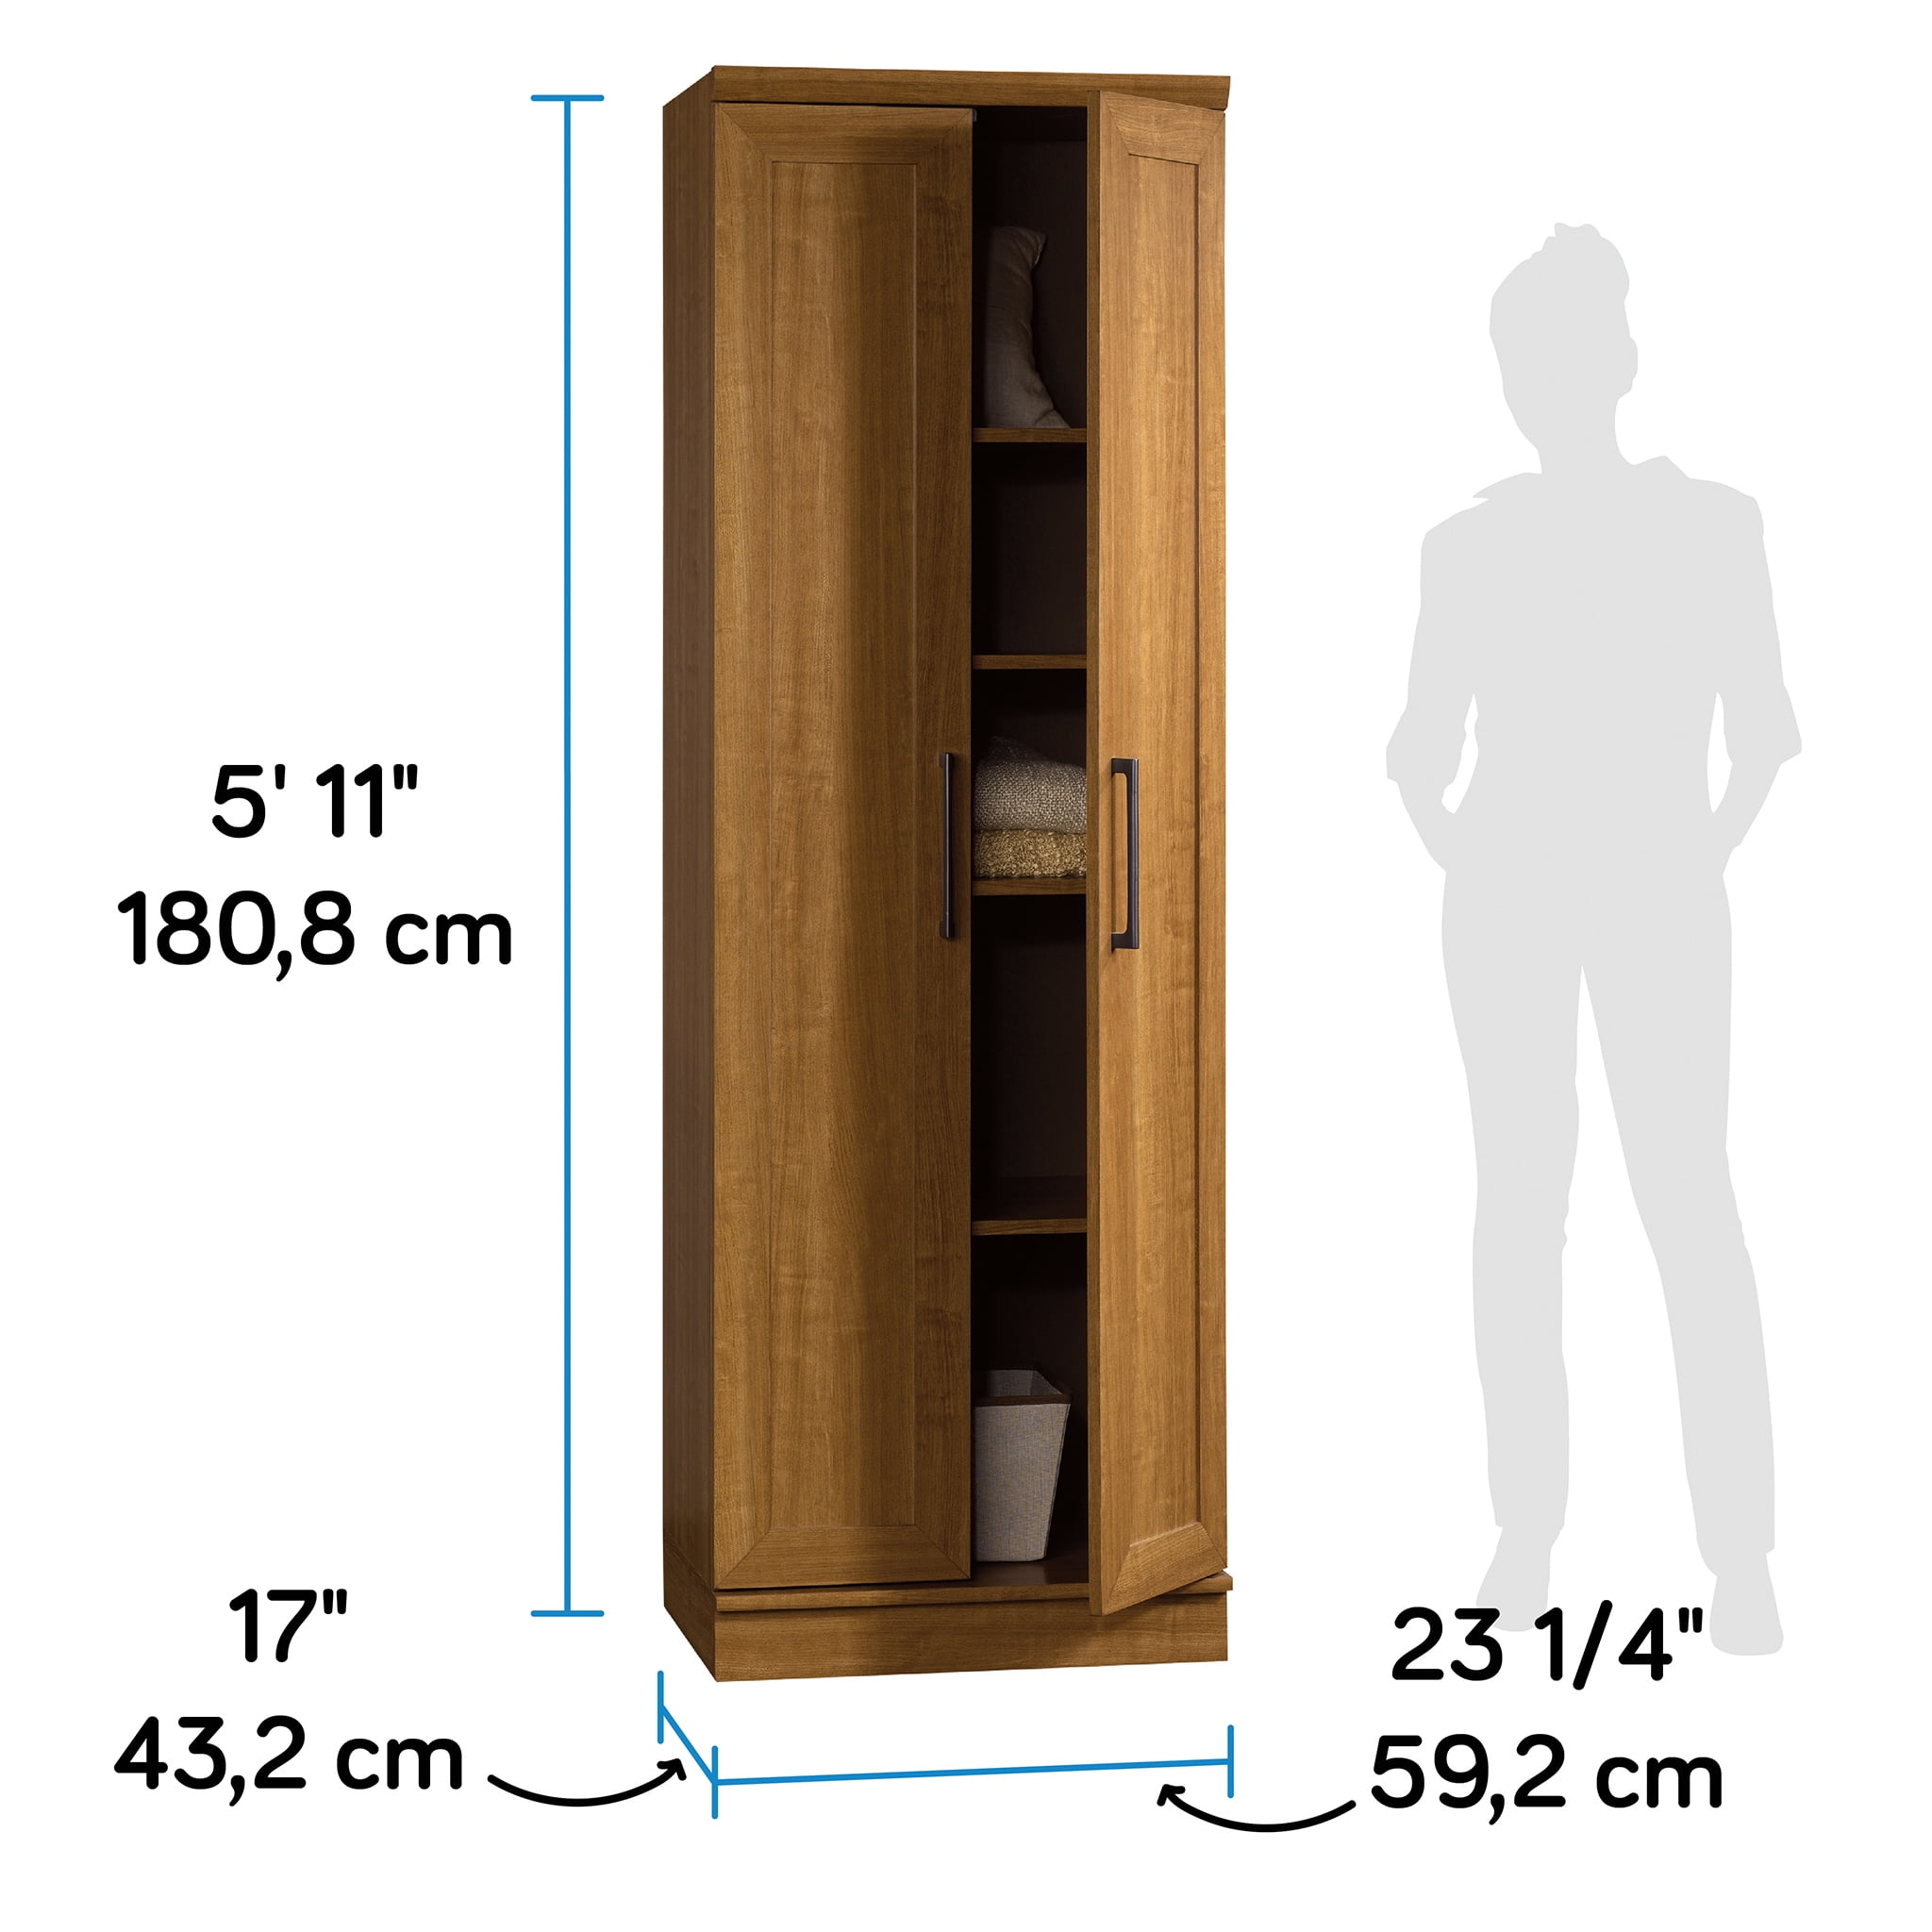 Realspace 12 Shelf Storage Cabinet 72 H x 36 W Sienna Oak - Office